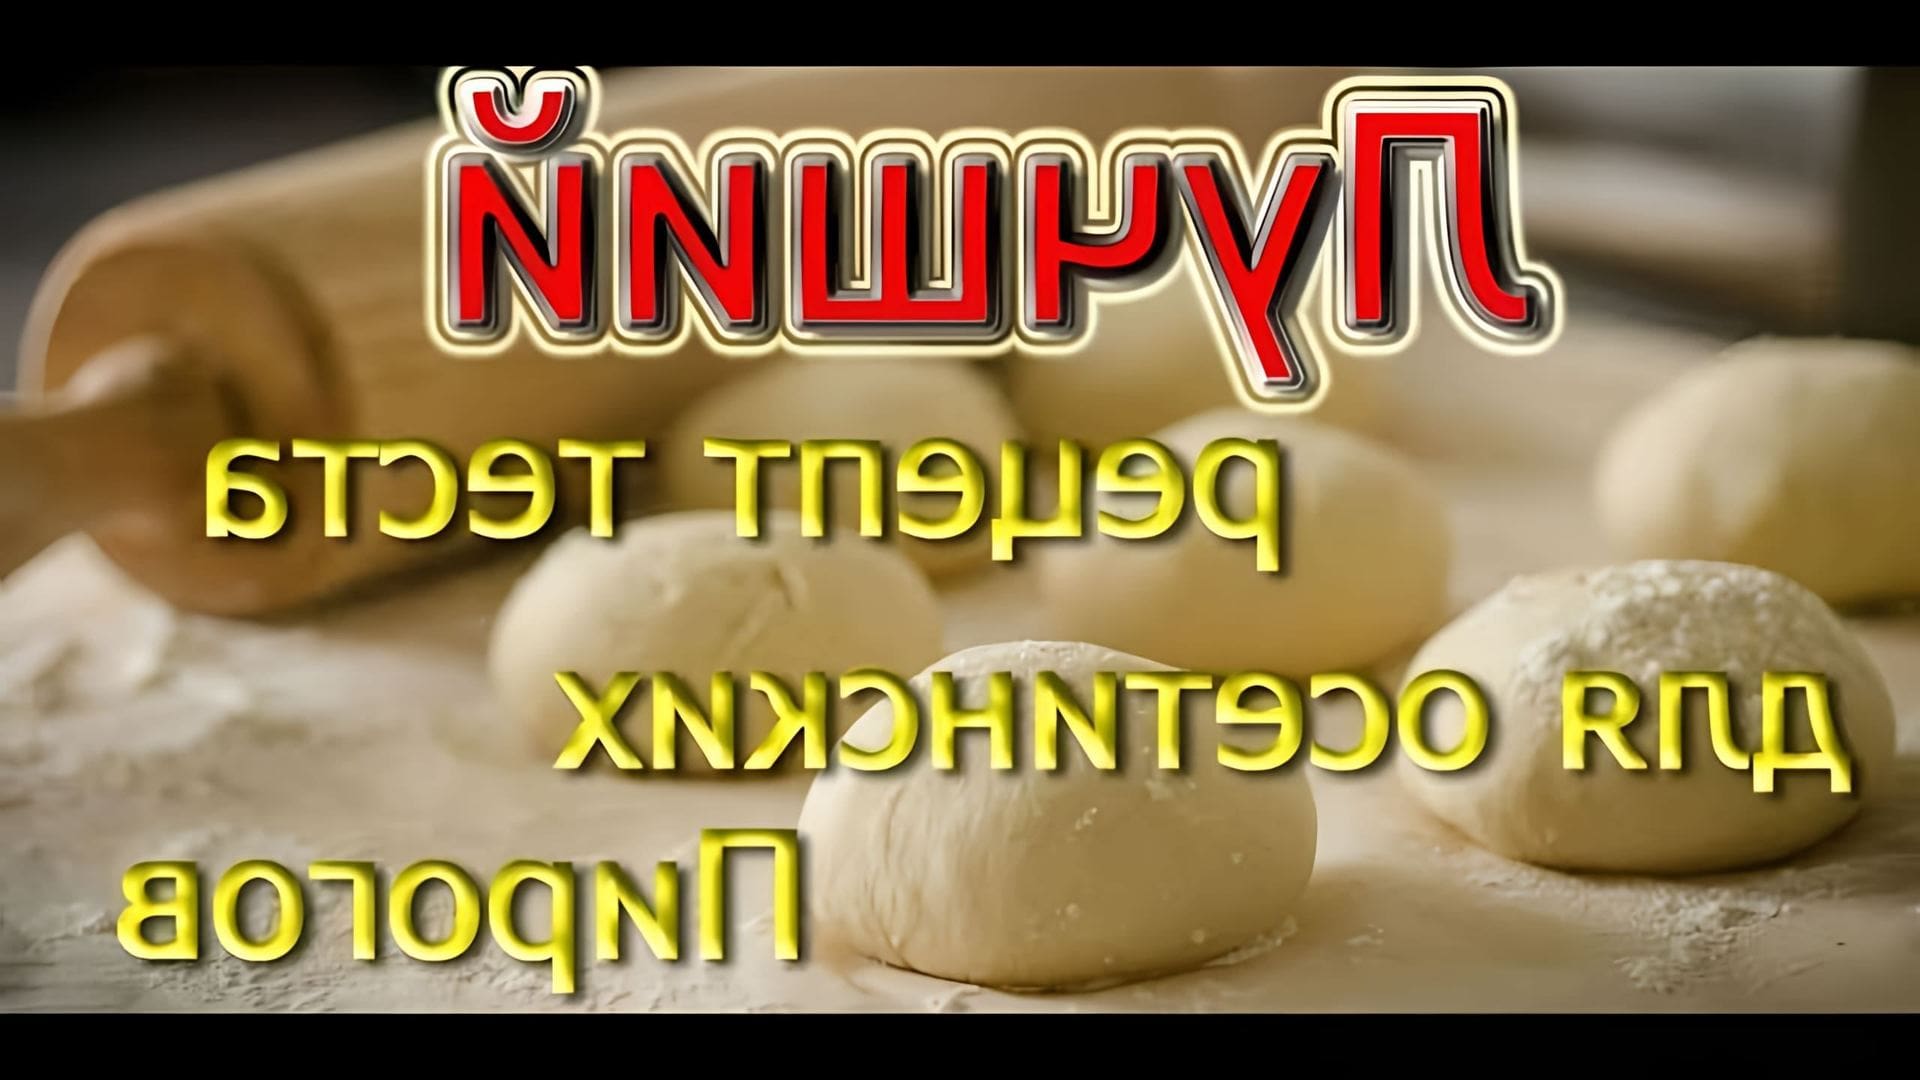 В этом видео-ролике будет представлен рецепт приготовления теста для осетинских пирогов, который считается одним из лучших